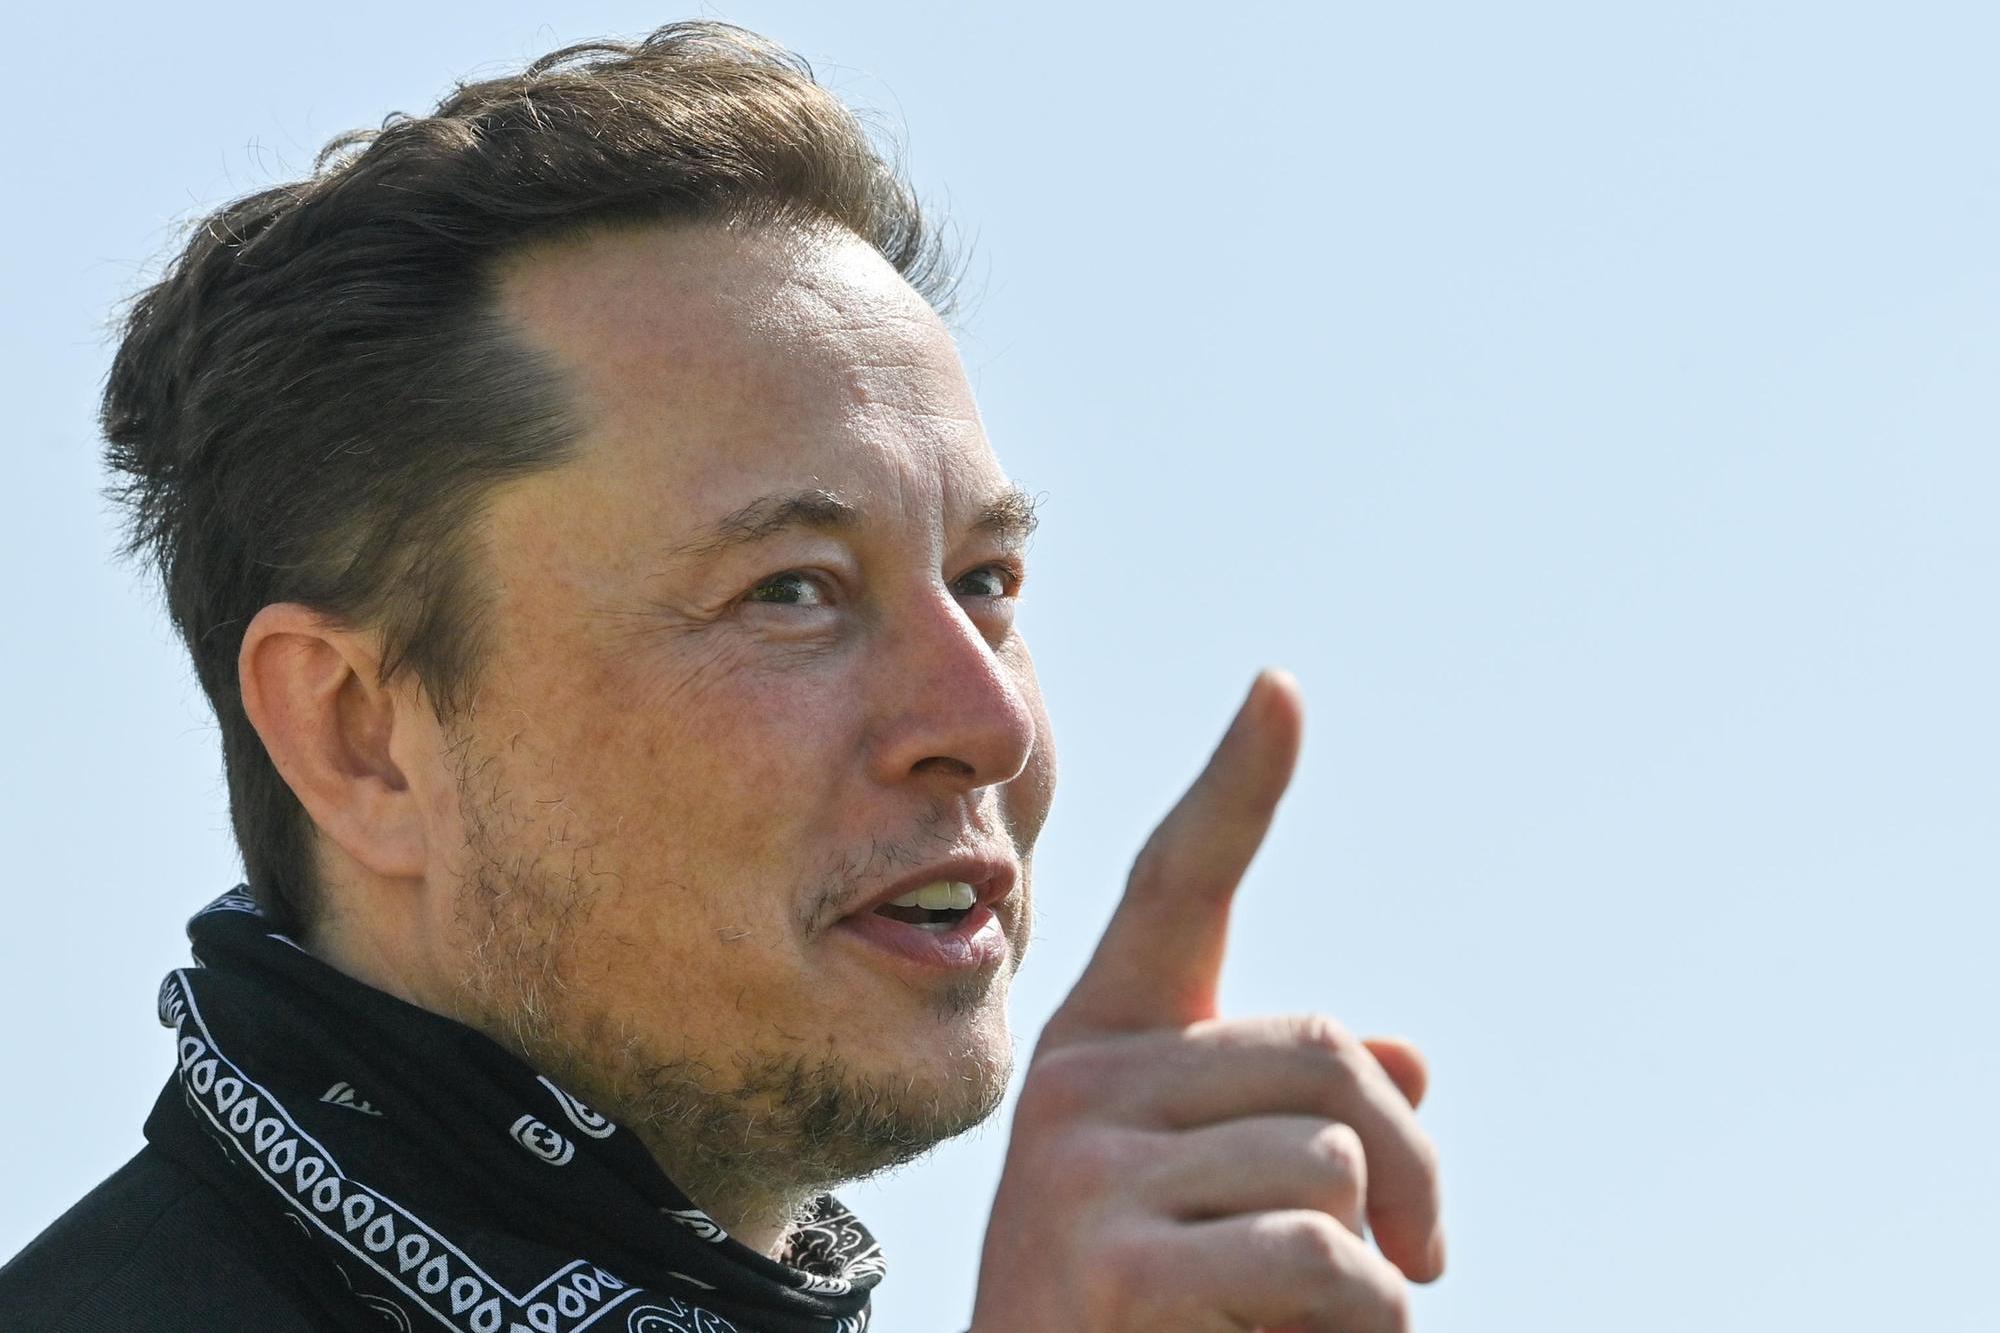 Natalità, la “profezia” di Elon Musk che fa paura alla Sardegna